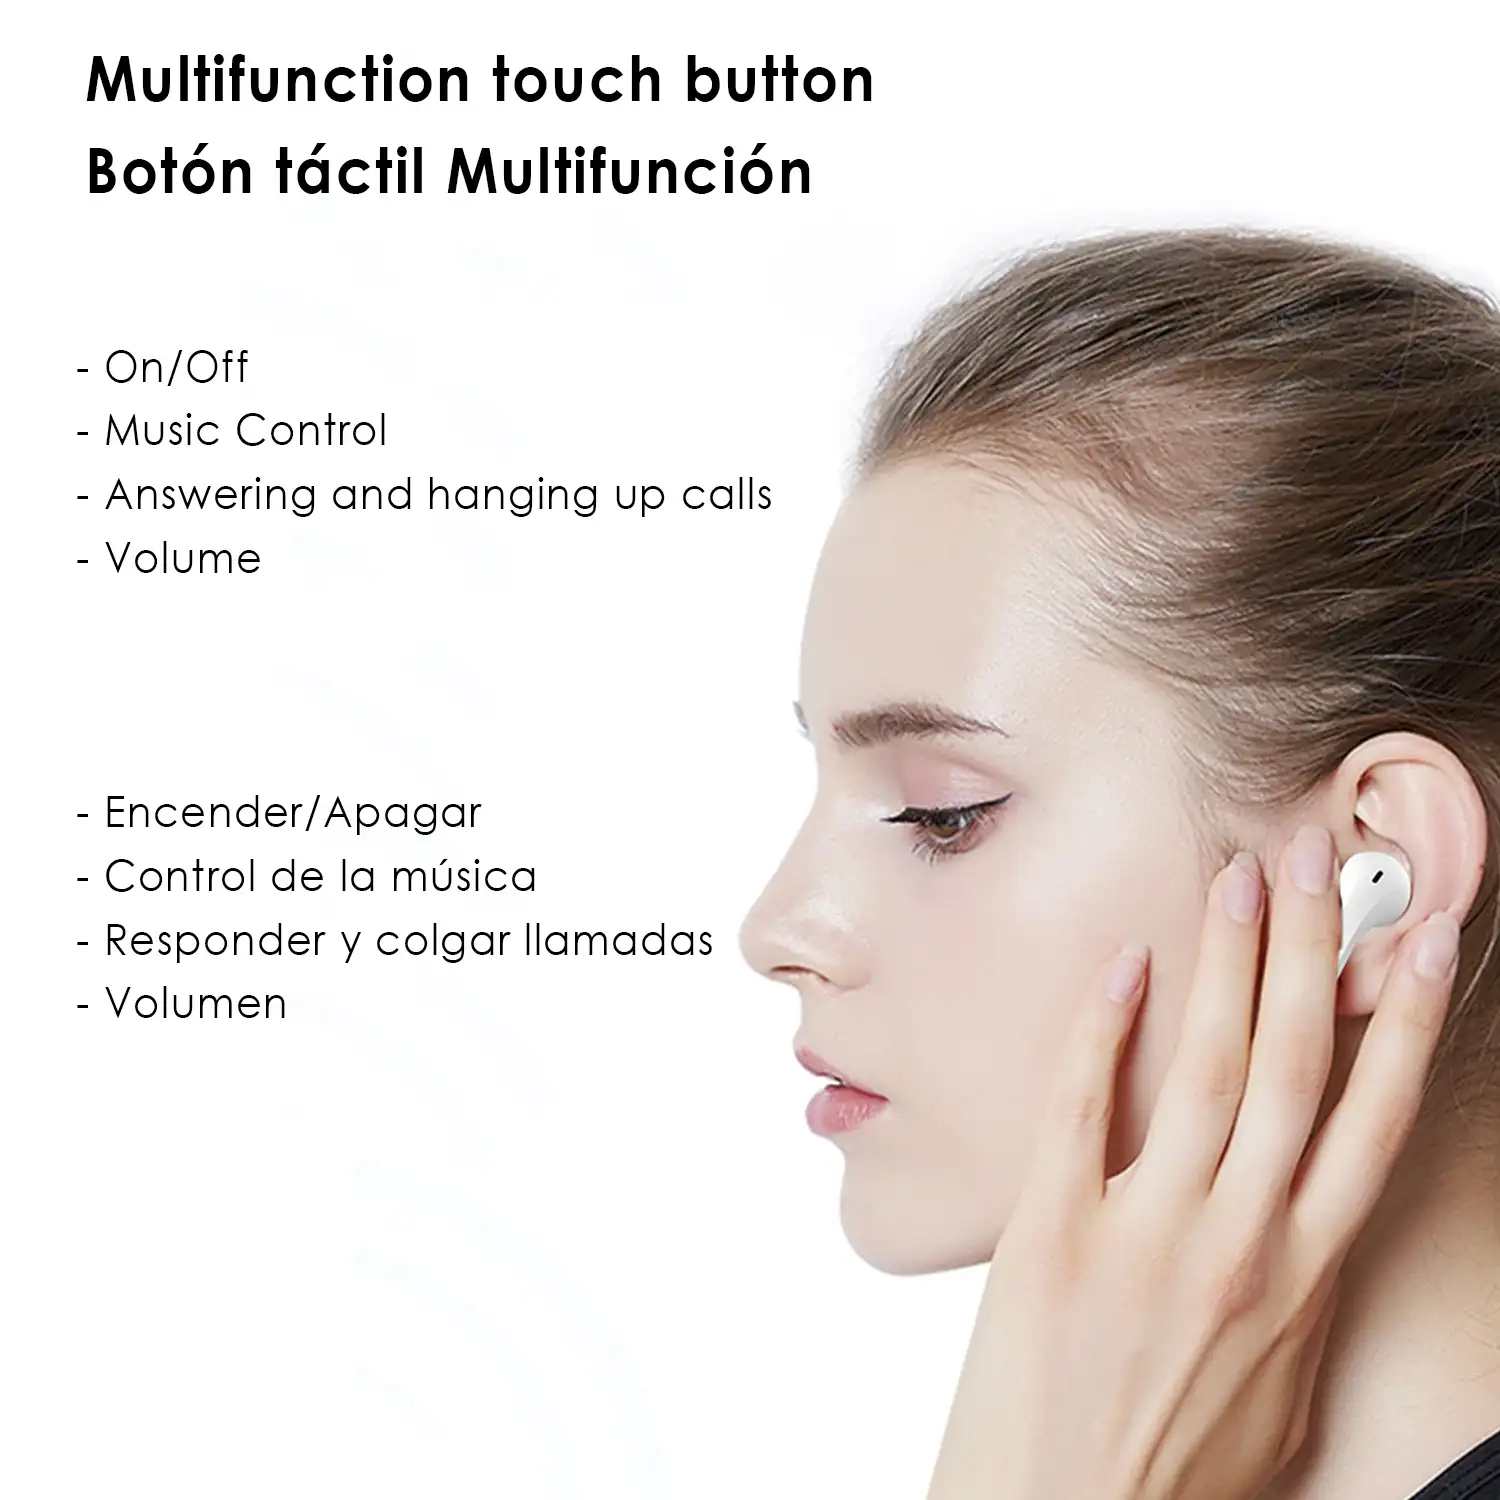 Auriculares TWS H21T Bluetooth 5.1 con  LED de carga. Caja de 300 mah+ auriculares con 30 mah..